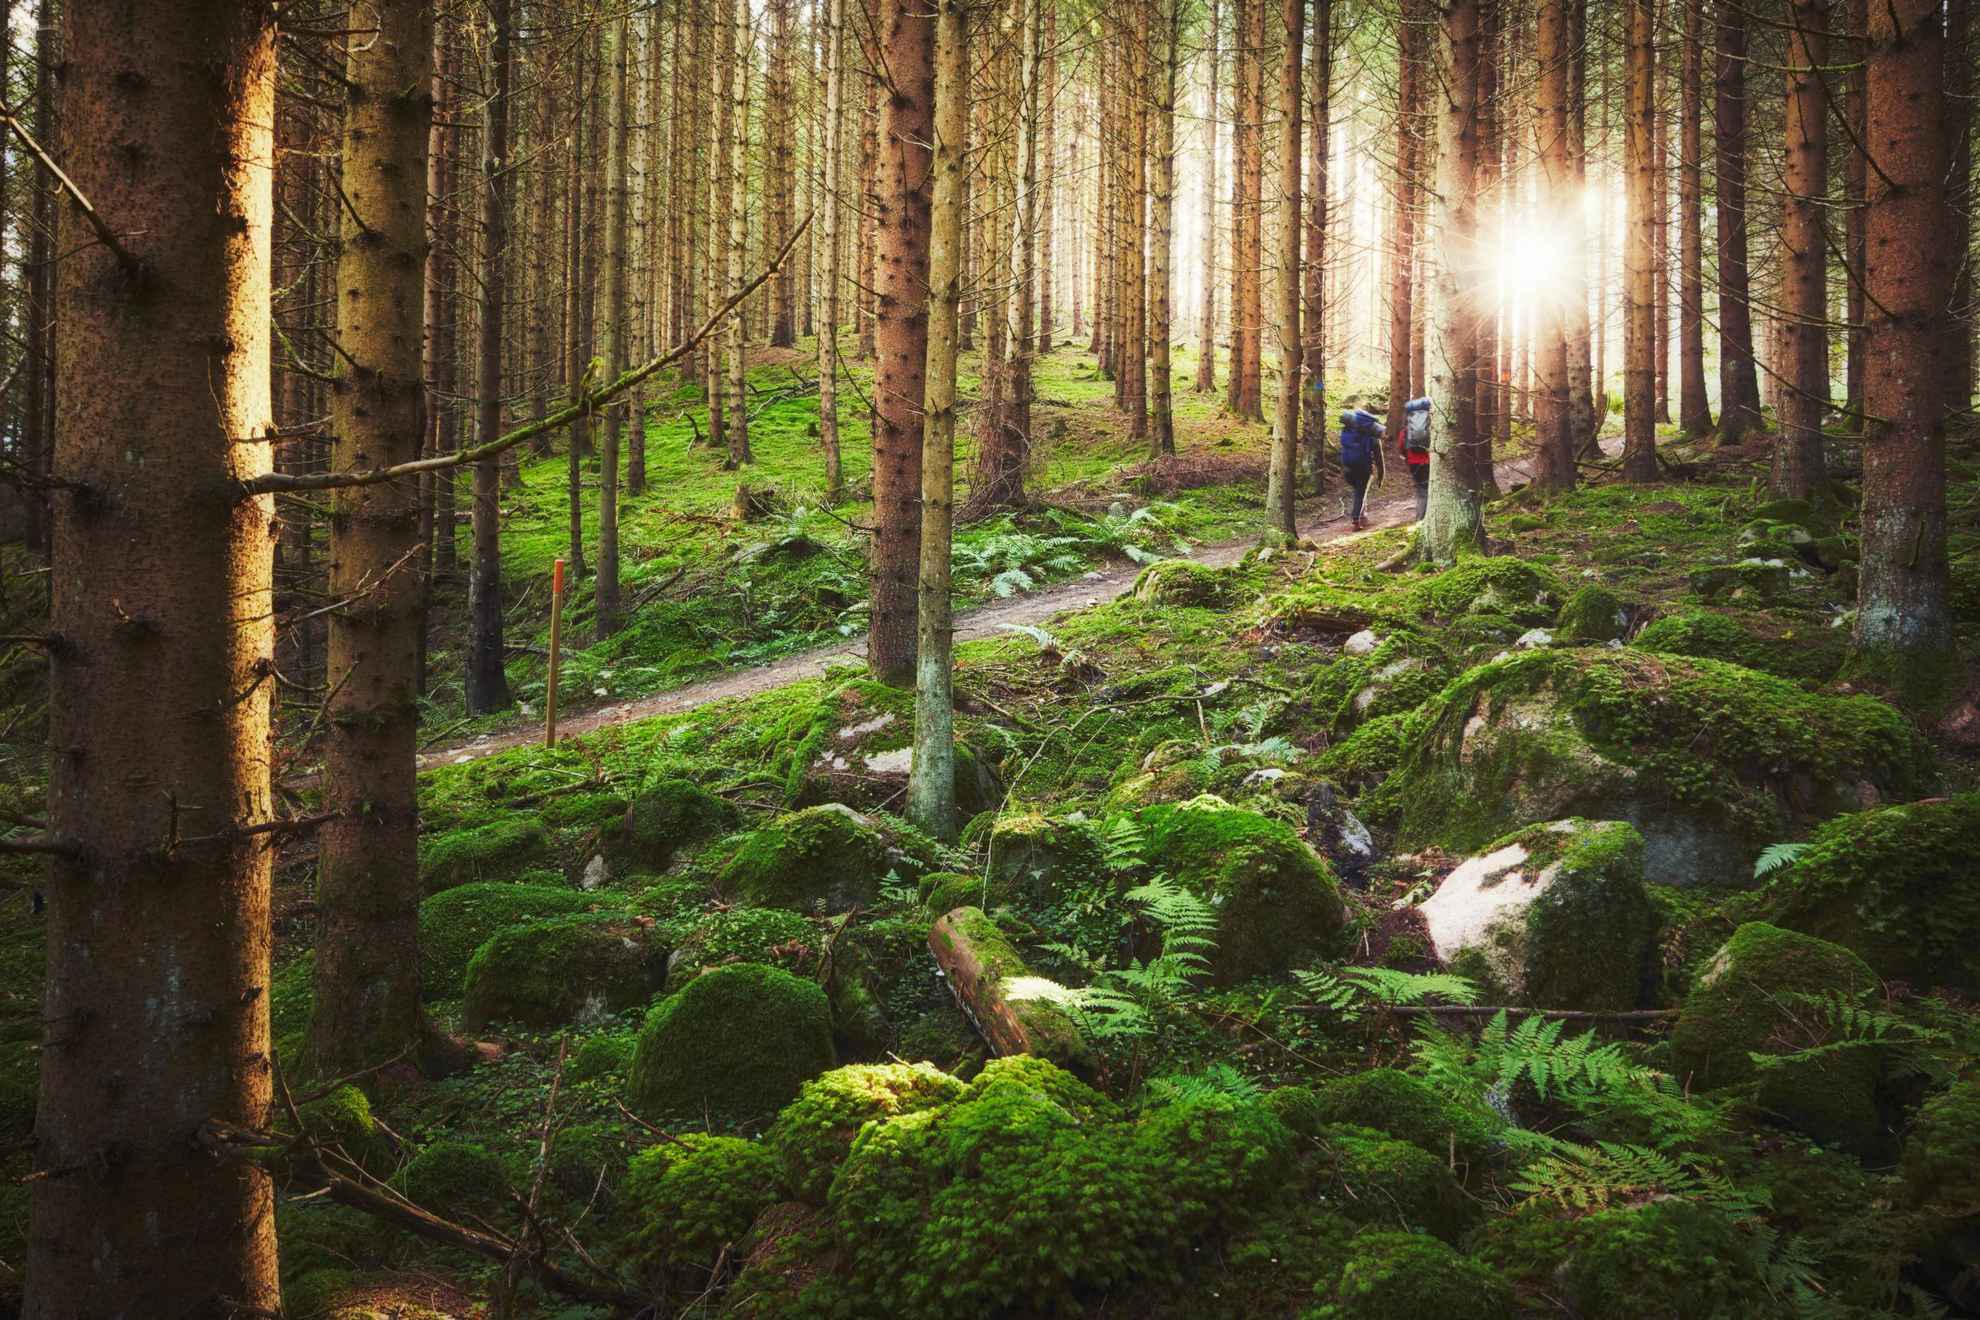 Twee mensen met rugzakken wandelen door een bos in Zweden, met de zon die door de bomen sijpelt.